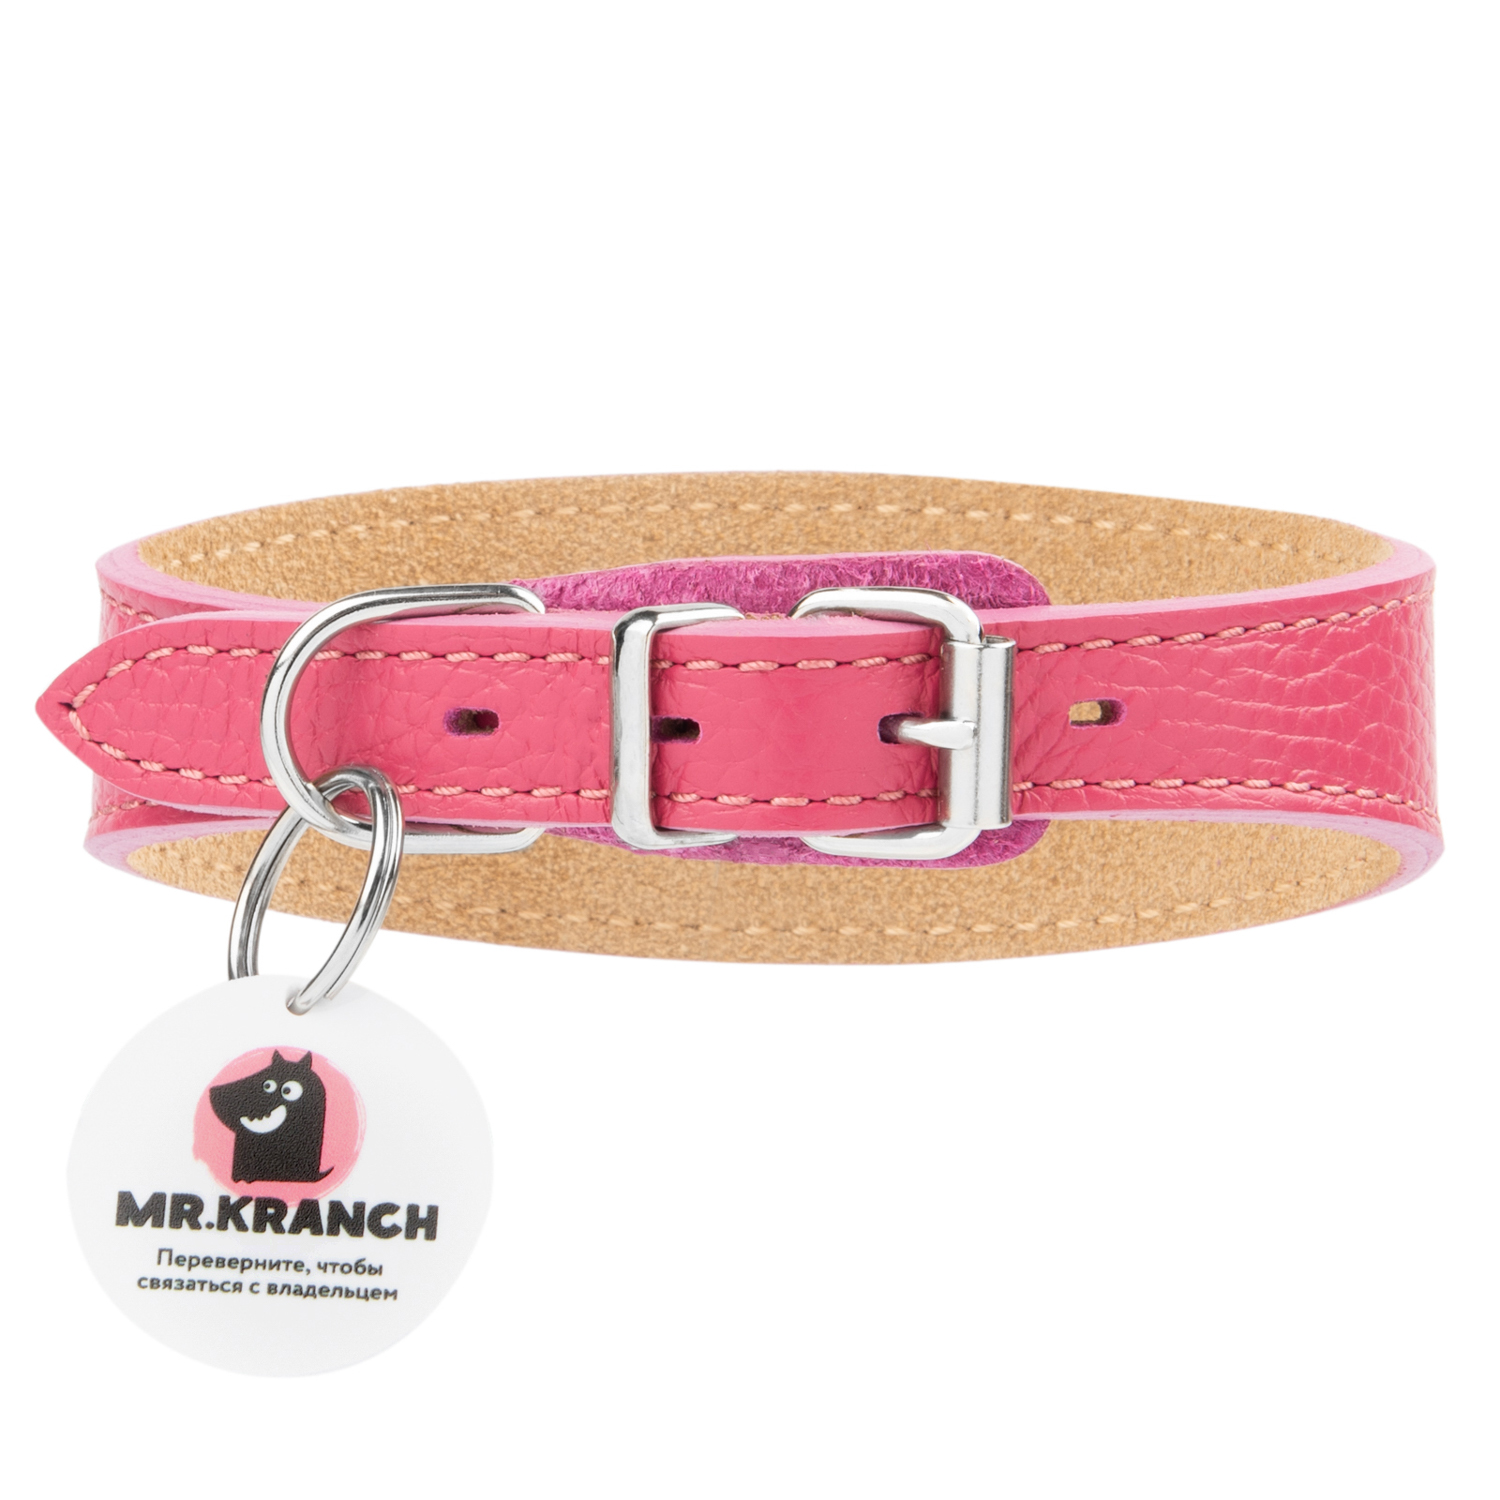 Ошейник Mr.Kranch для собак из натуральной кожи с QR-адресником, 38-45см, розовый